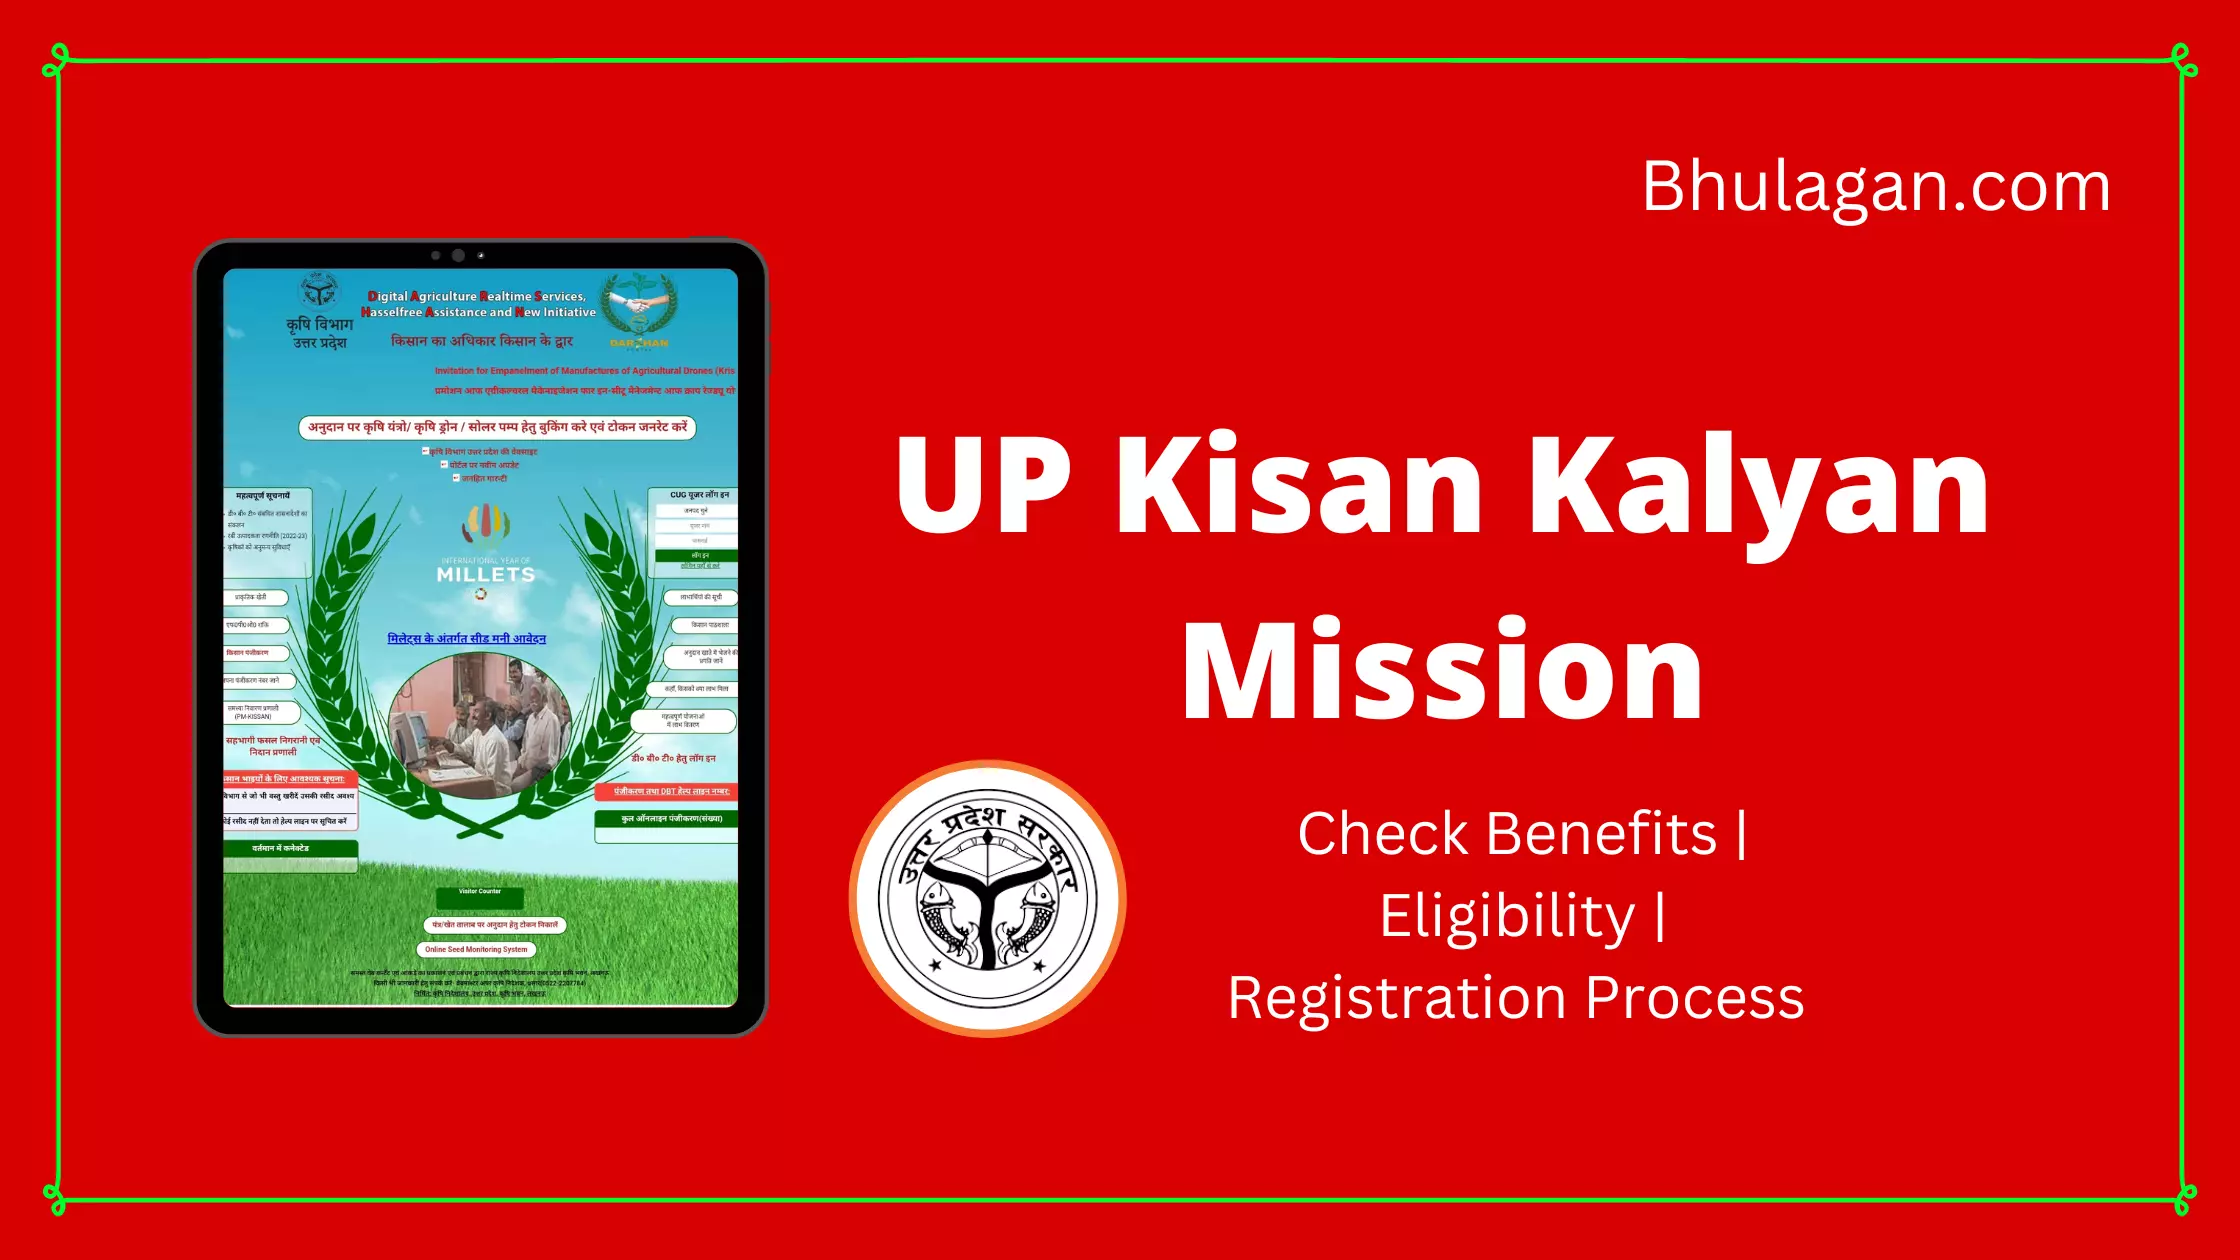 UP Kisan Kalyan Mission